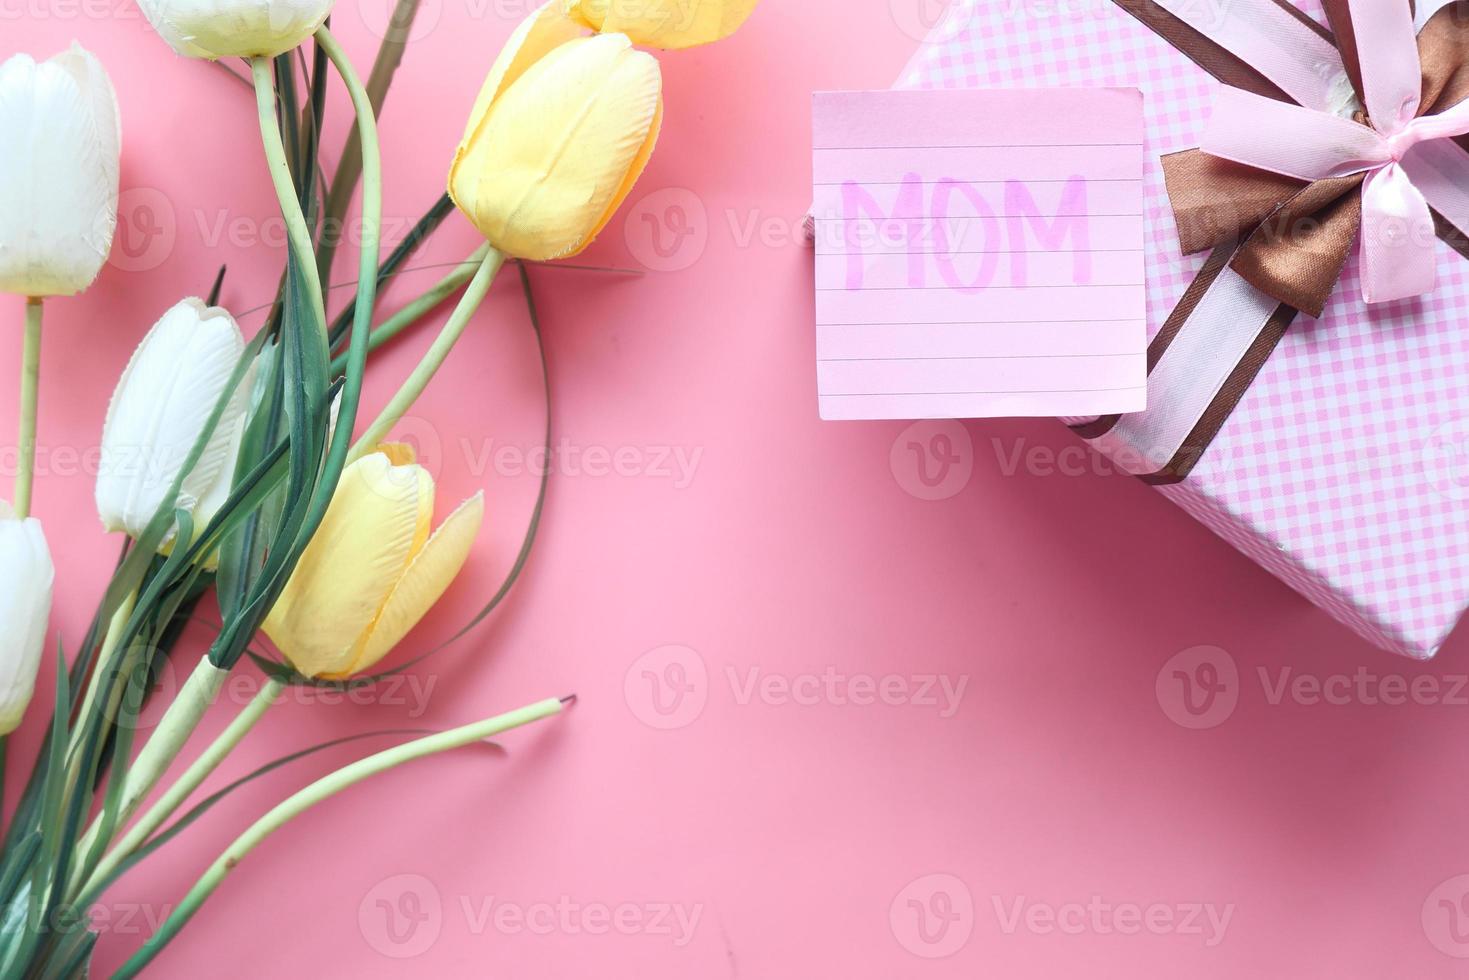 presente do dia das mães em fundo rosa foto